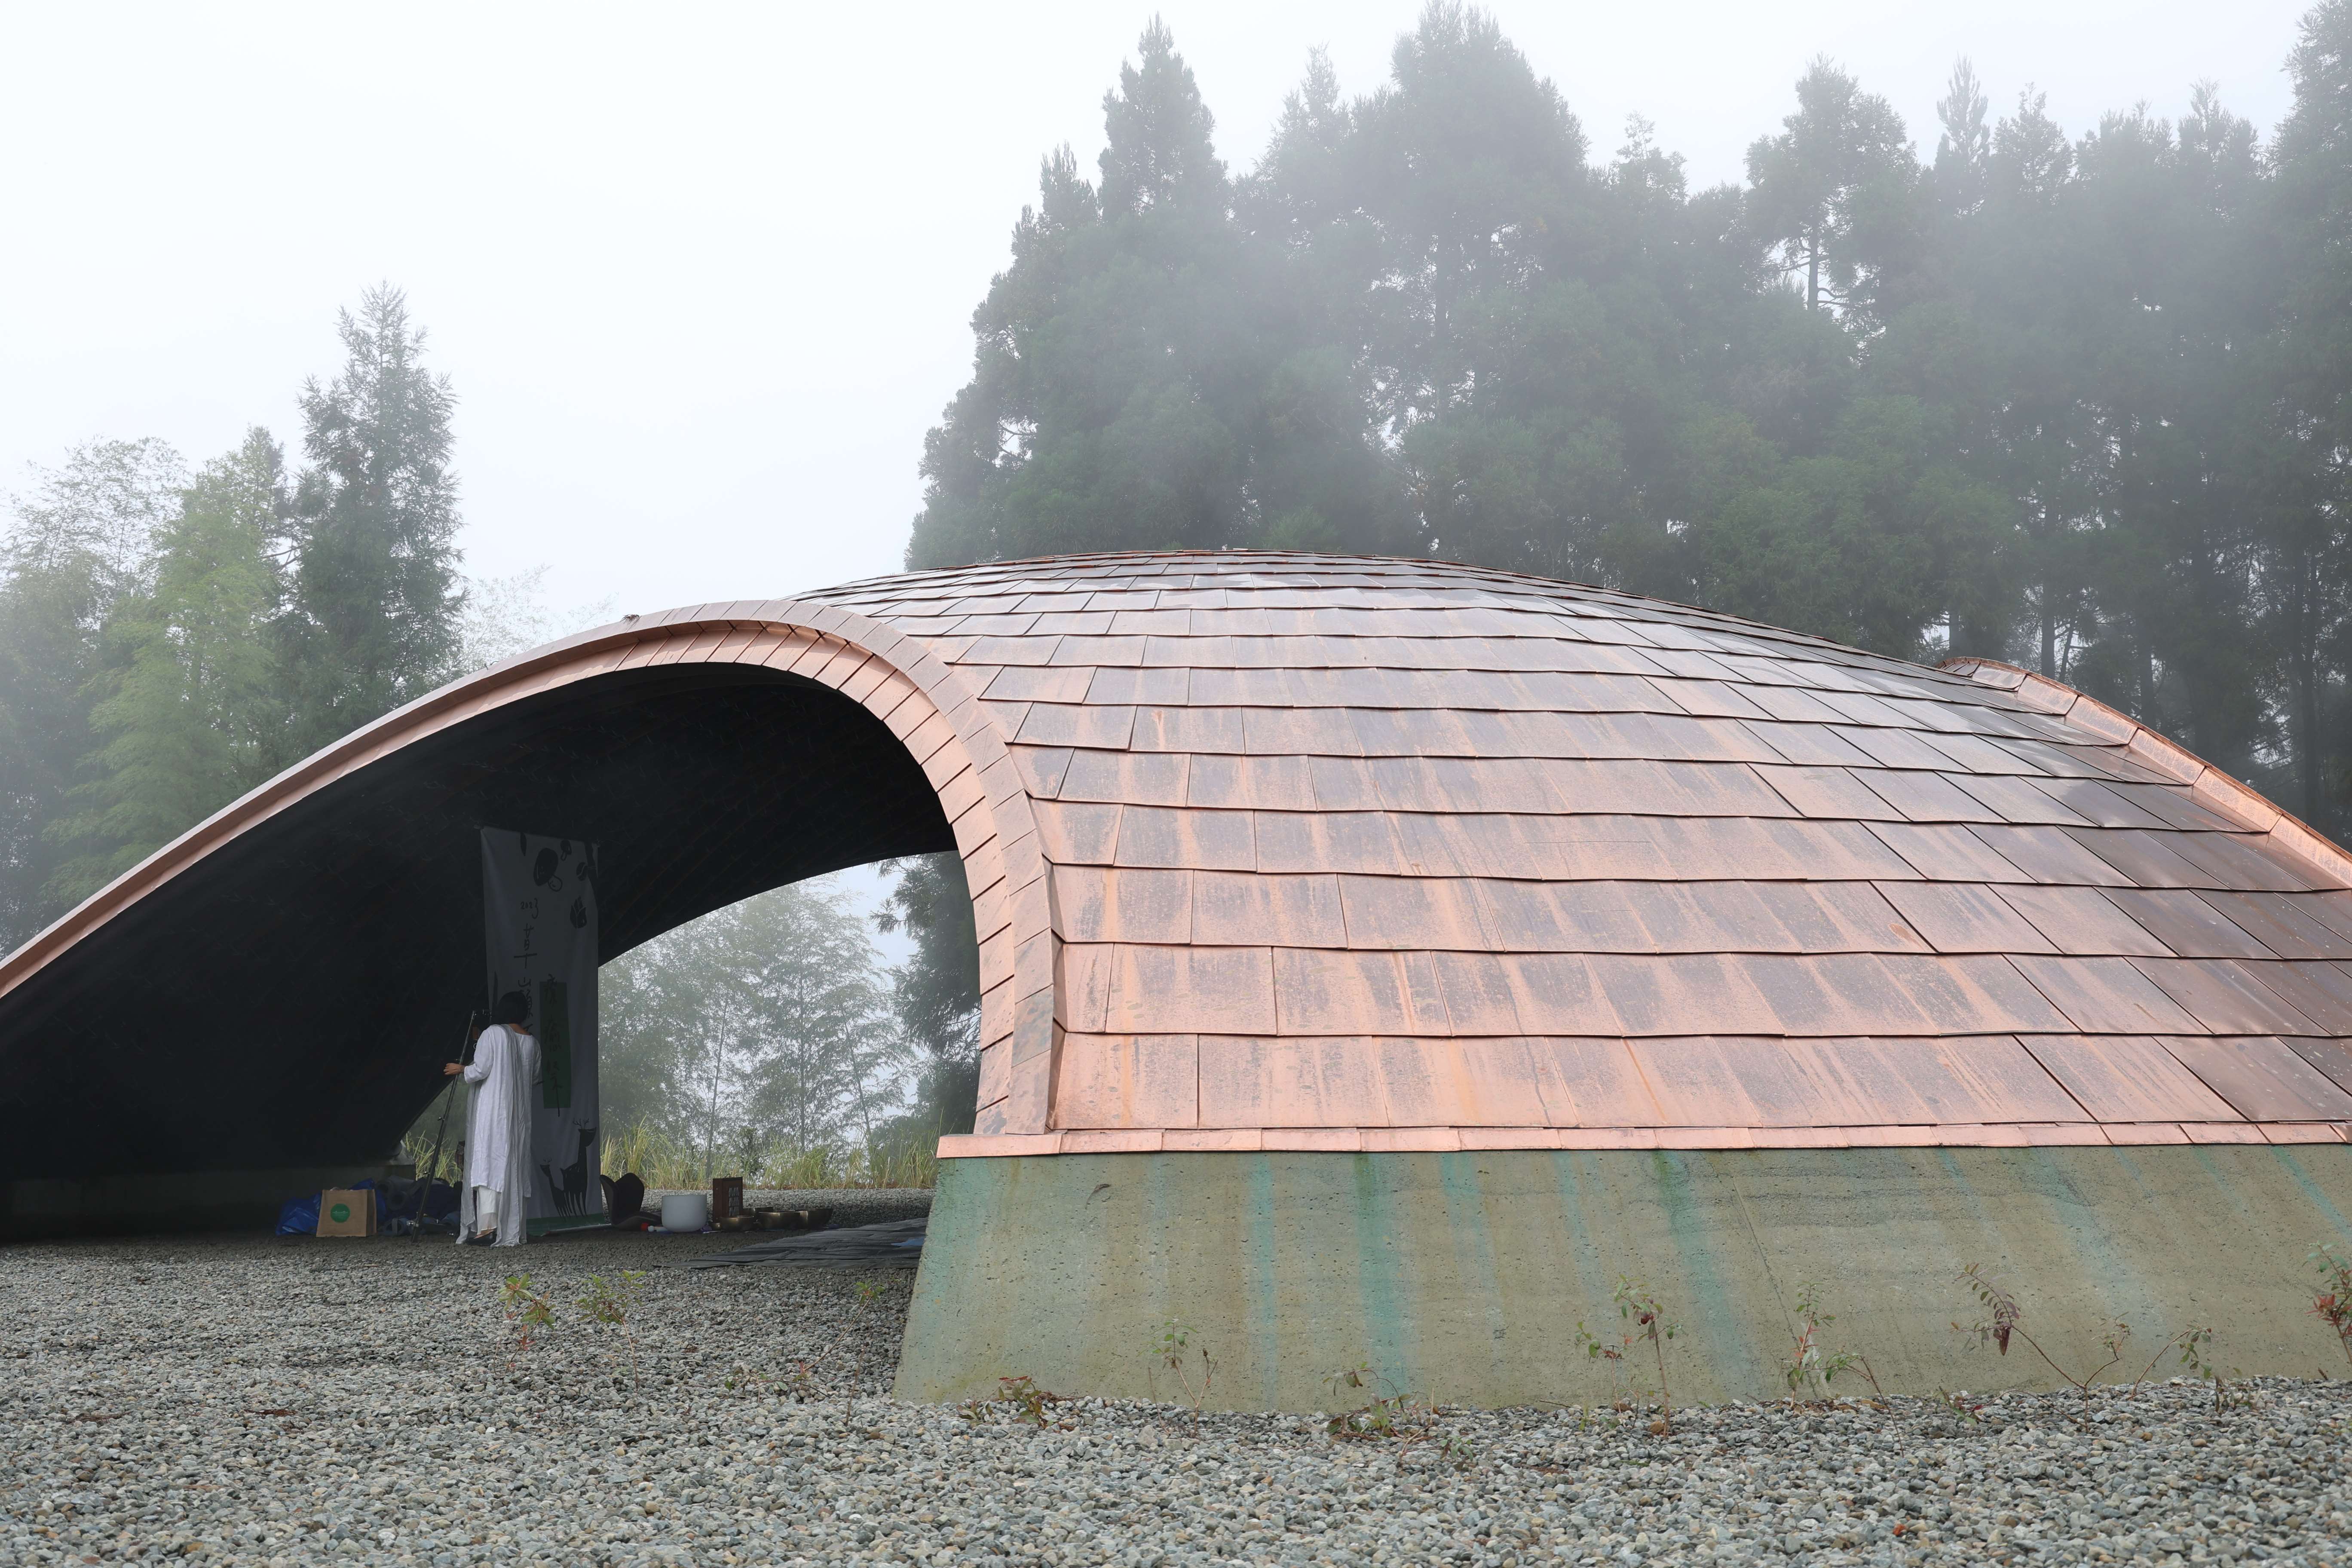 本園區主要停留點之「竹林生活教室」，使用竹材建構一跨距18公尺之穹頂竹棚，棚頂採用耐候又典雅的銅為材料